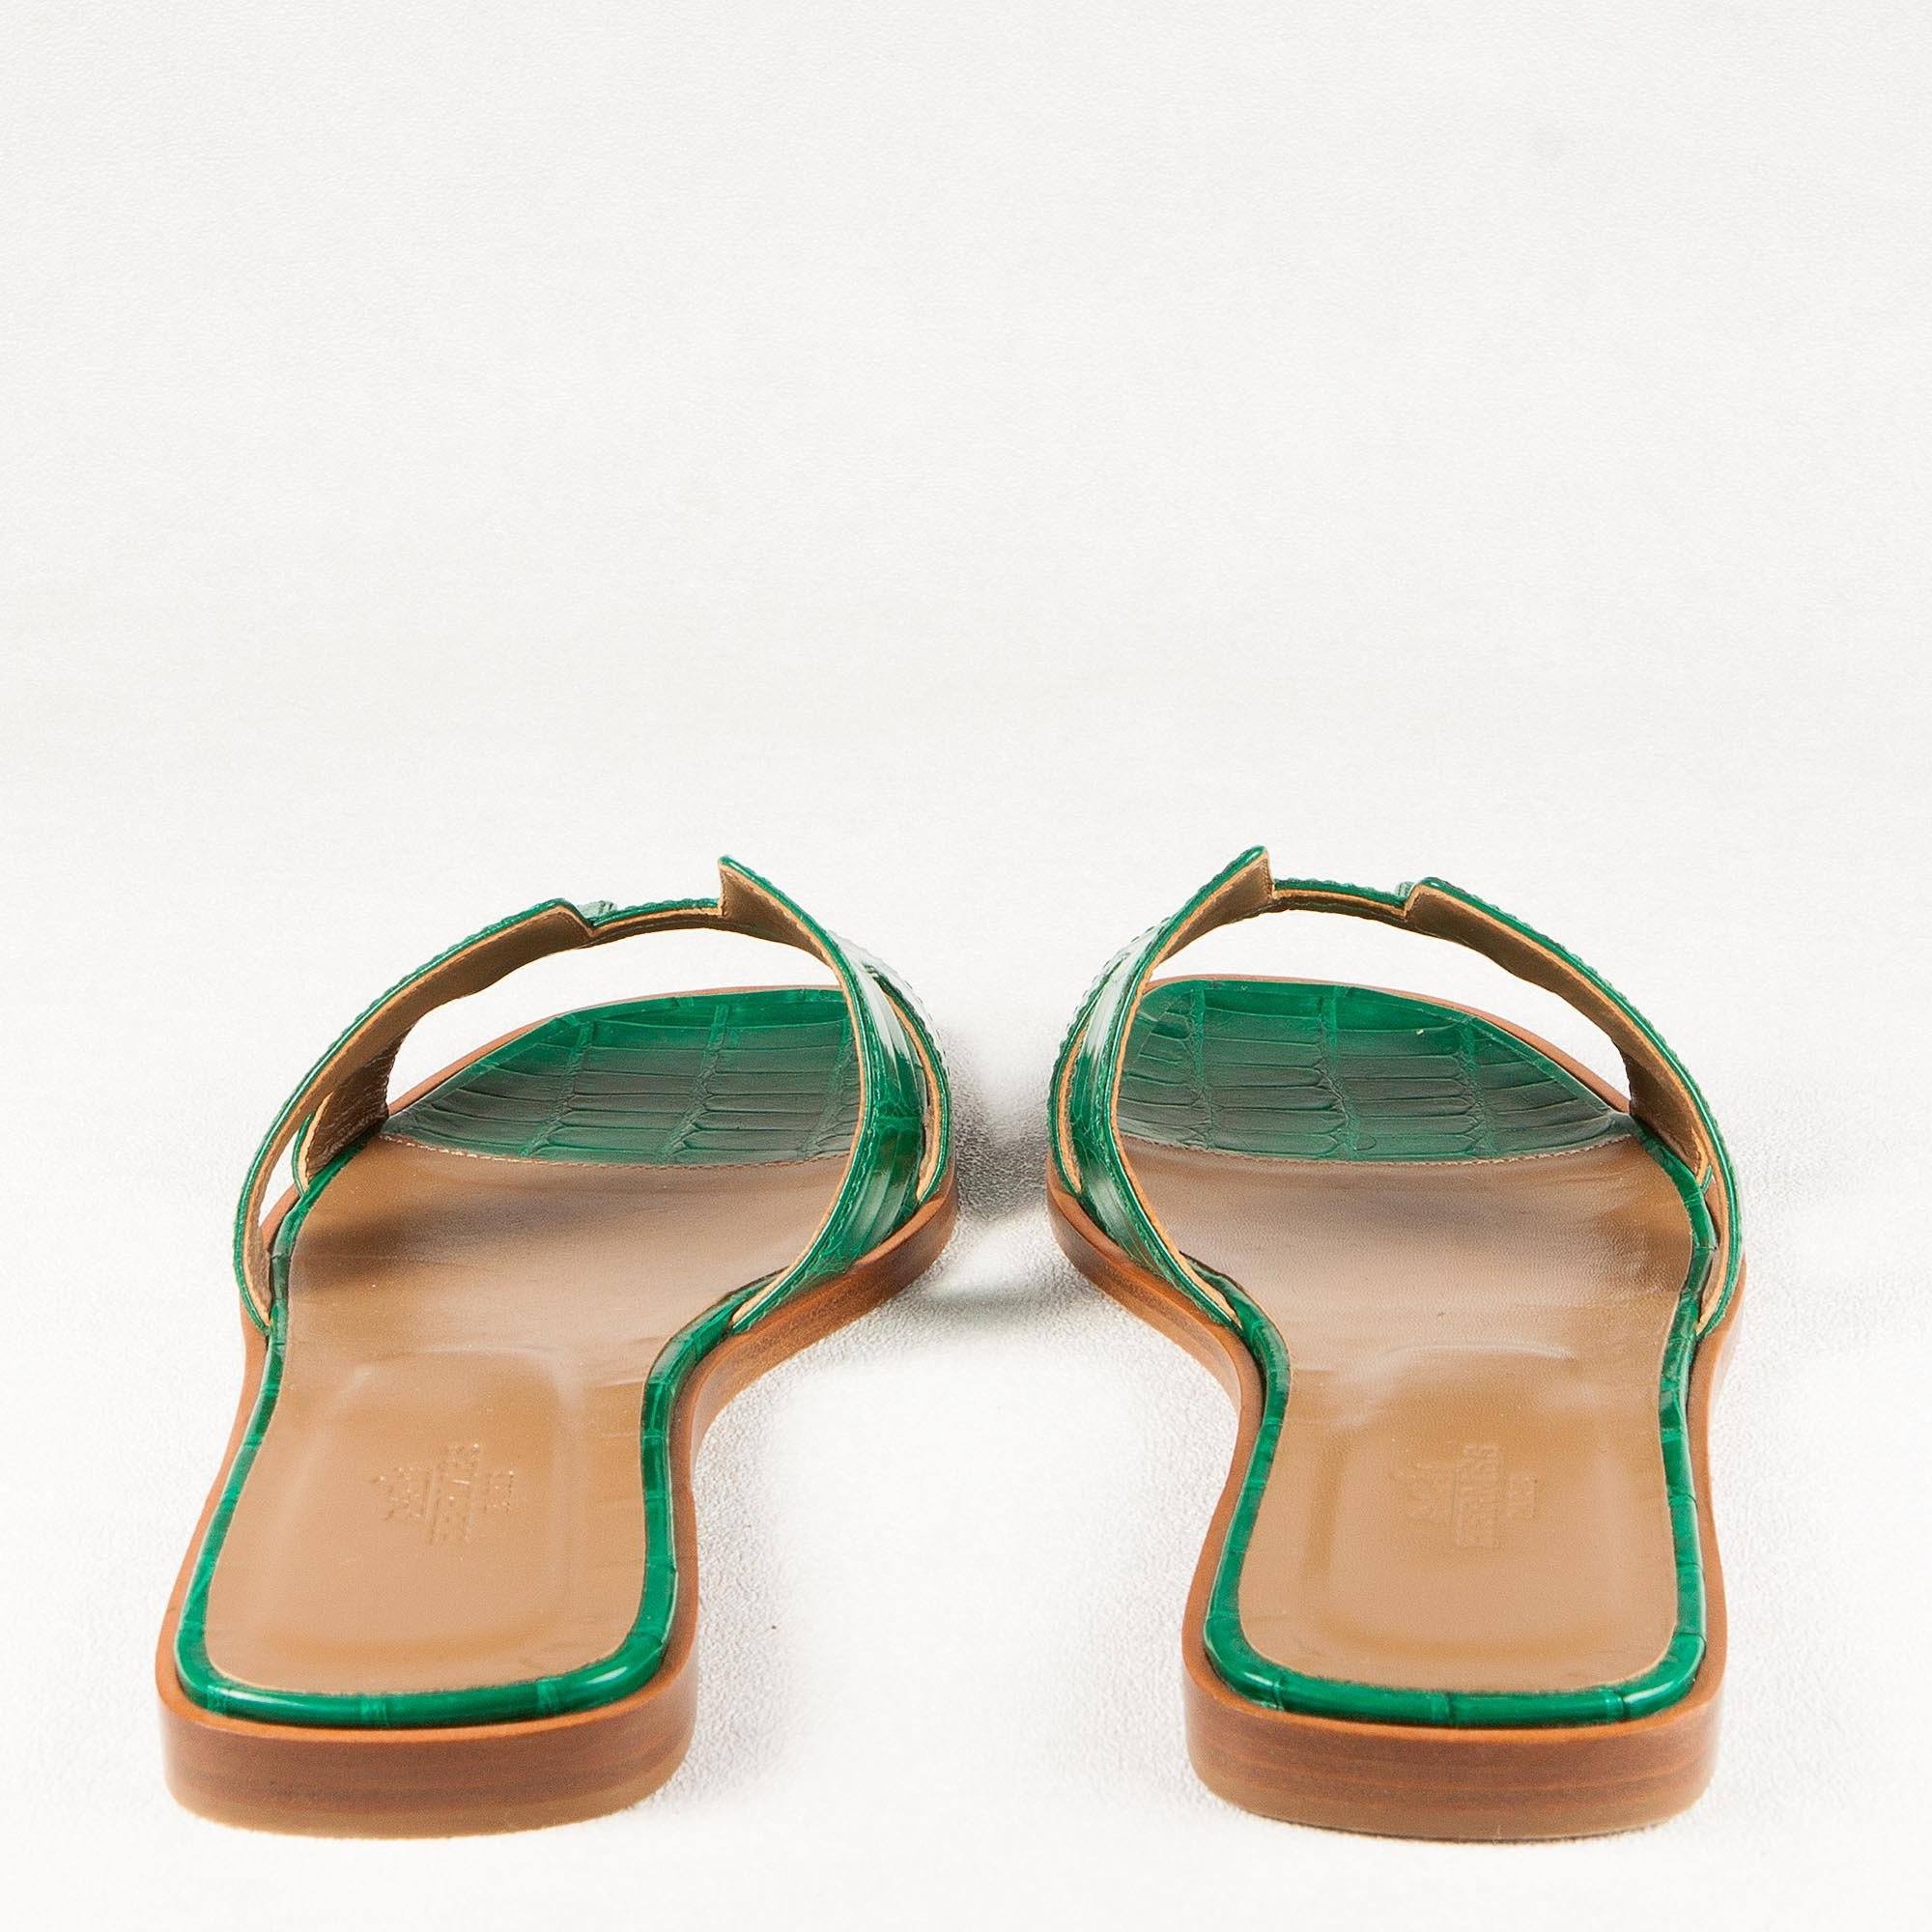 green croc sandals